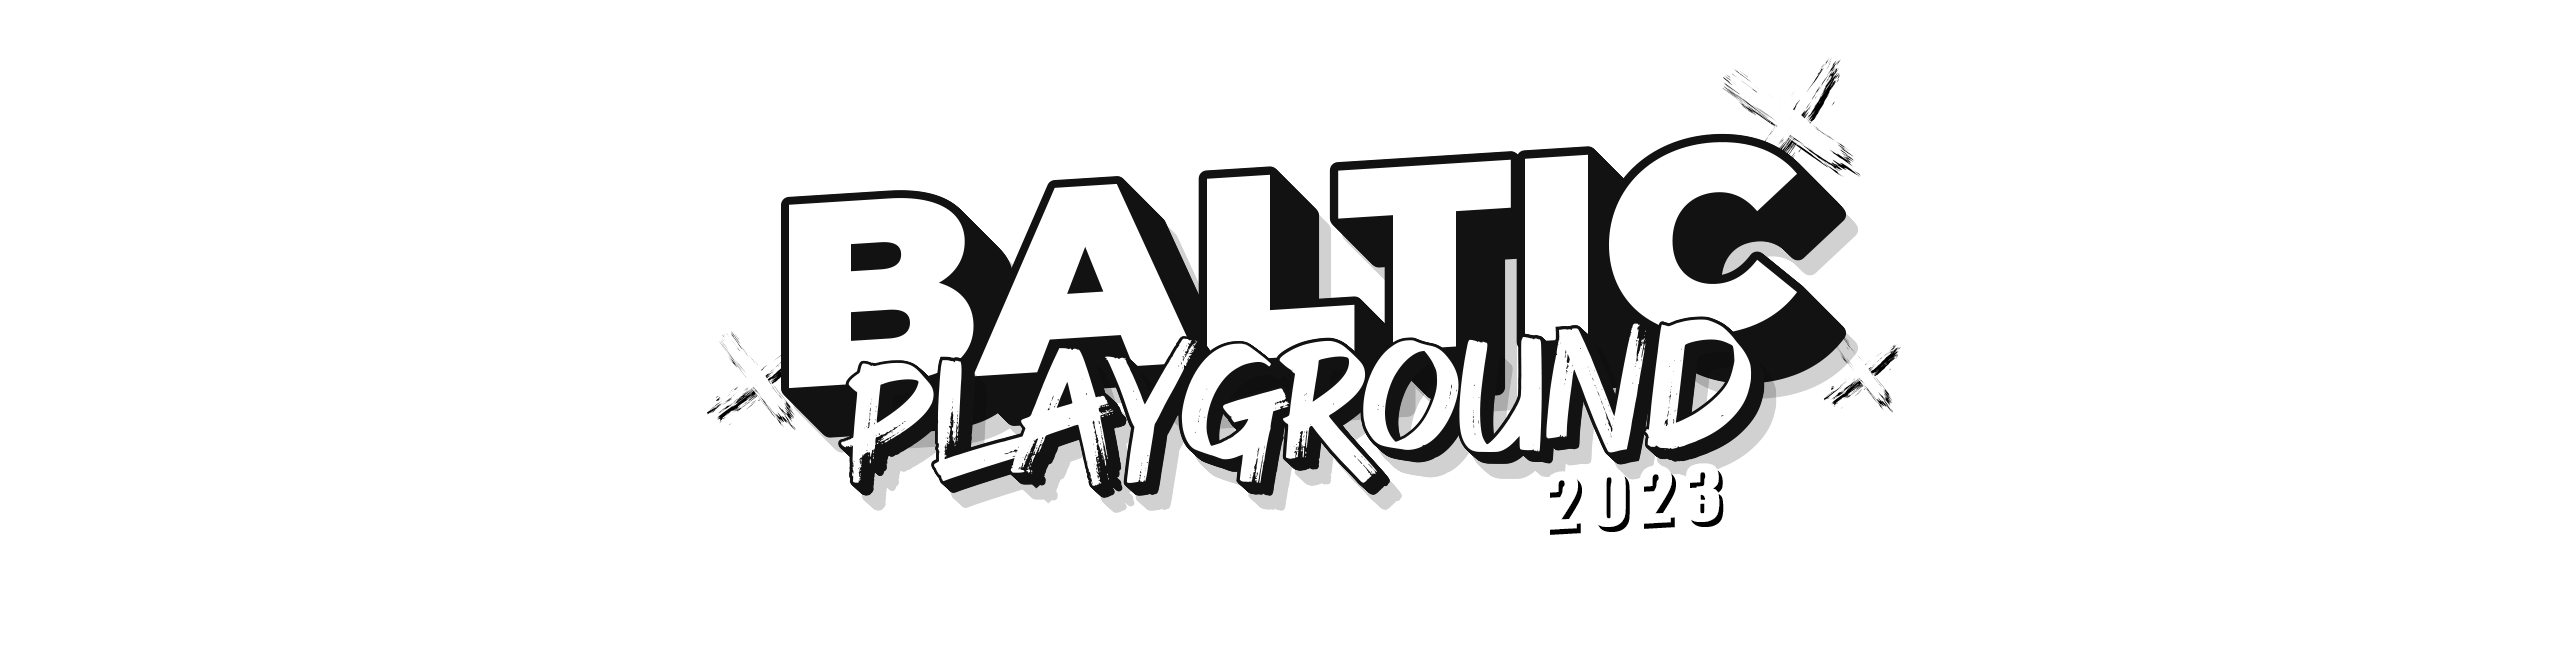 Baltic Playground